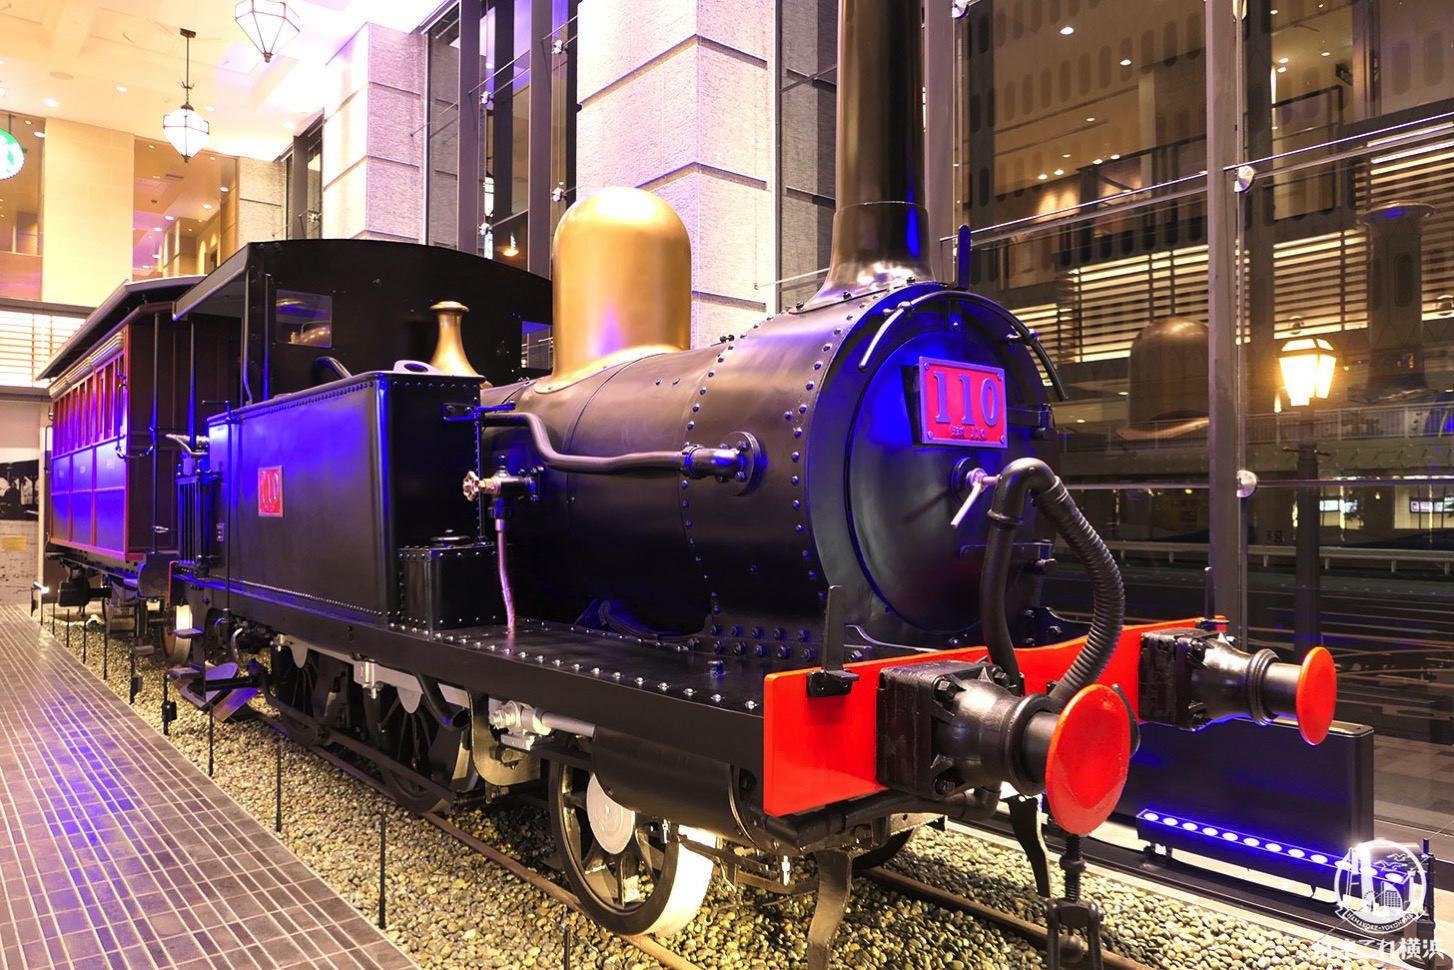 110形蒸気機関車